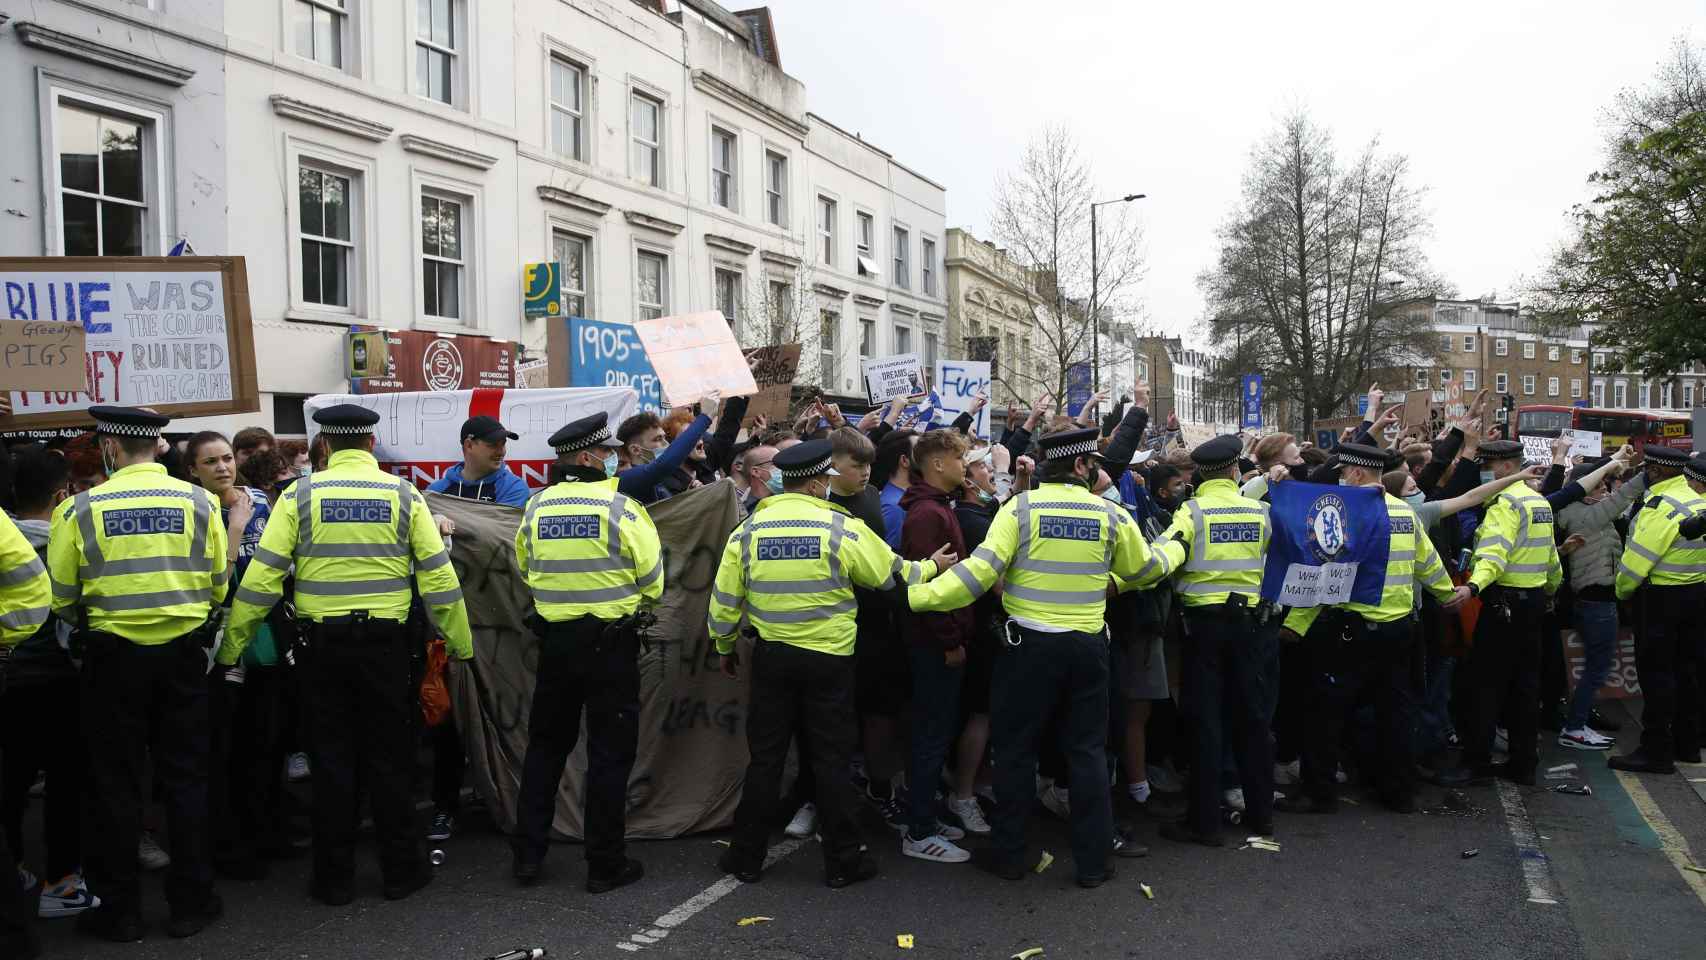 Las protestas de los aficionados del Chelsea que metieron presión al club inglés para salir de la Superliga Europea